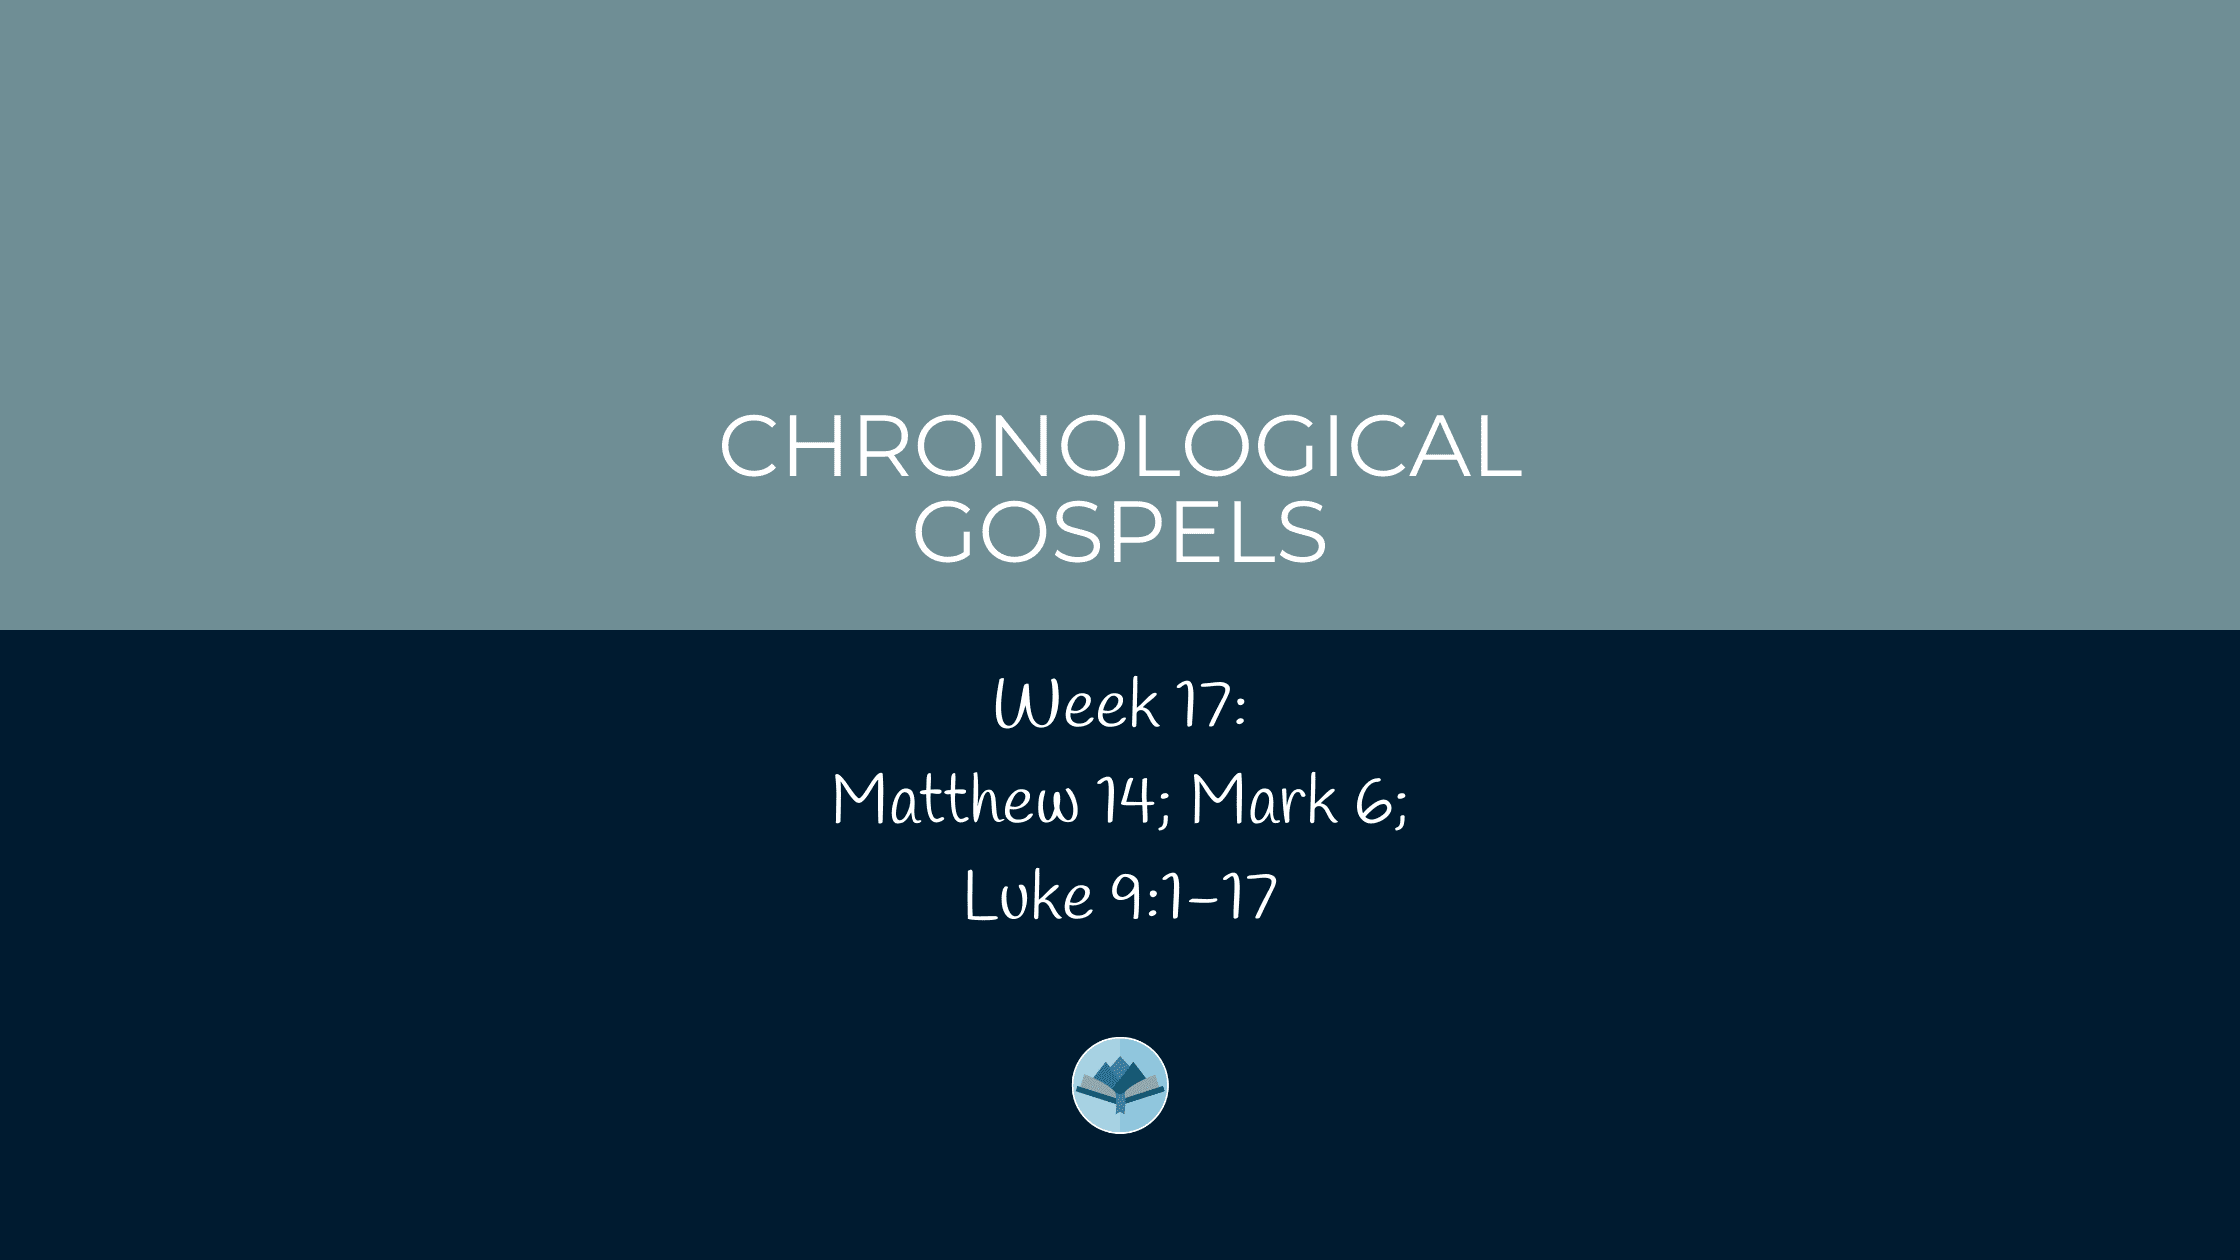 Chronological Gospels Week 17 Matthew 14; Mark 6; Luke 9:1-17